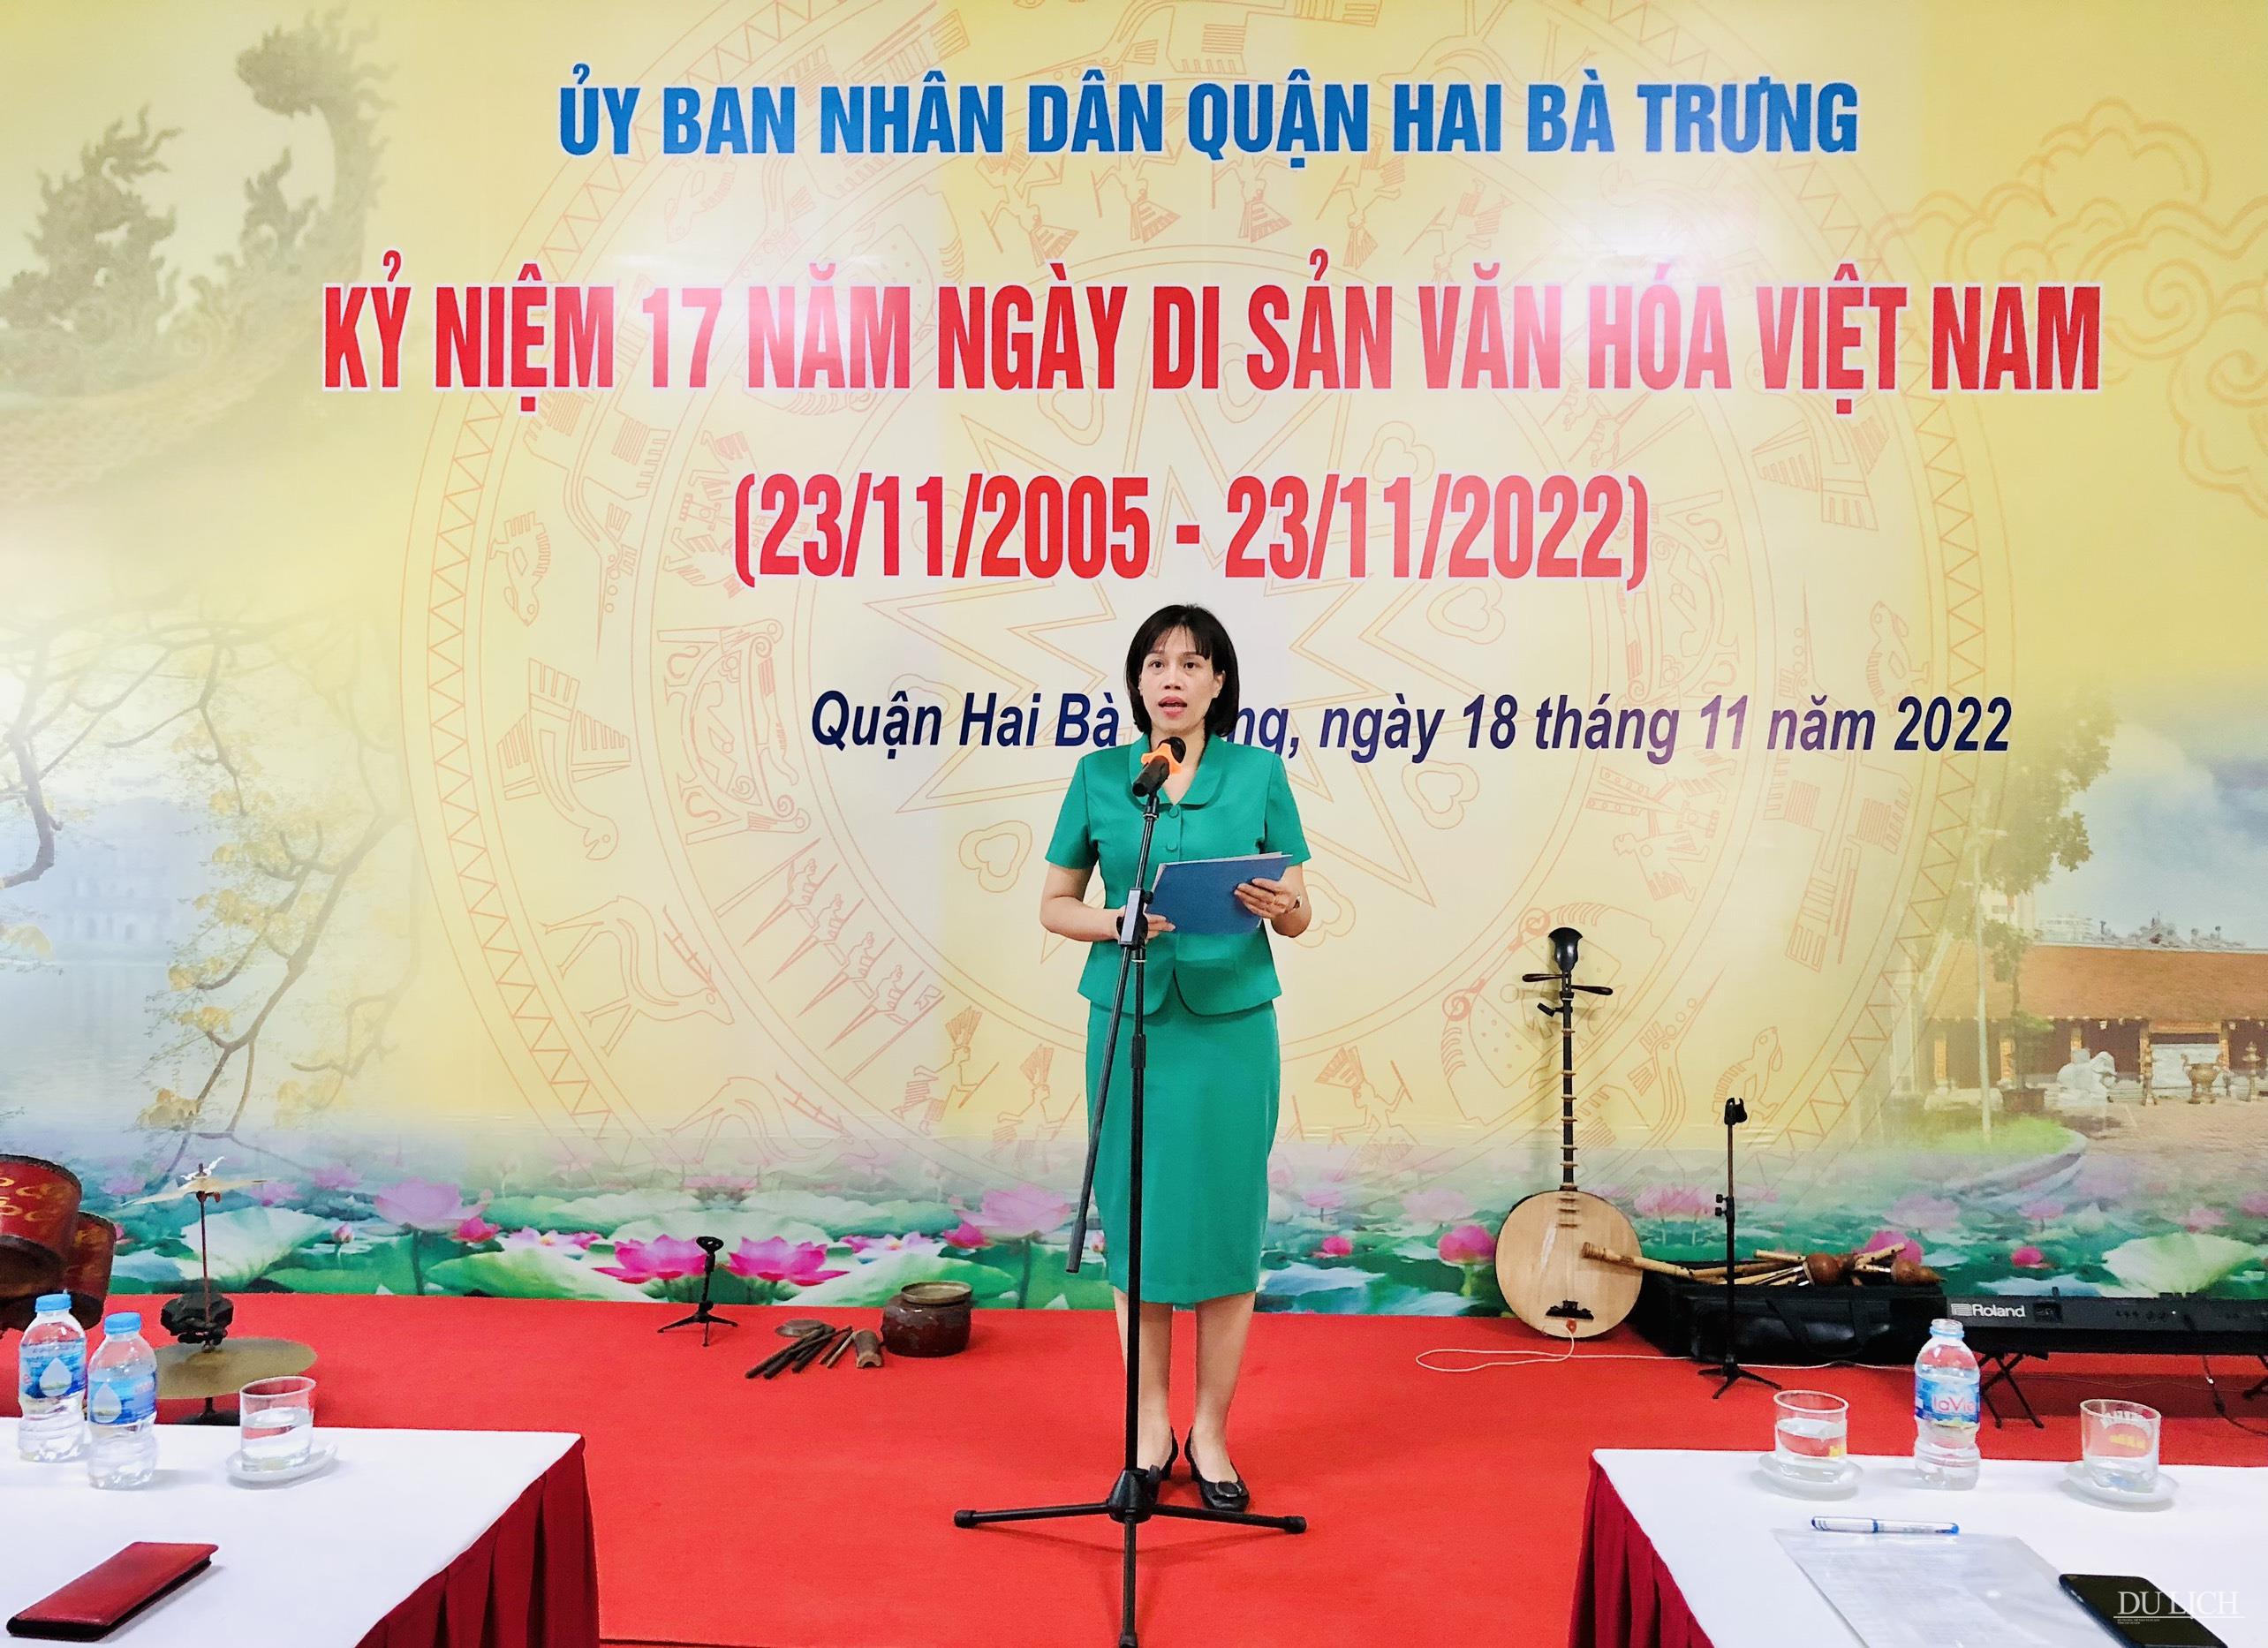 Phó Chủ tịch UBND quận Hai Bà Trưng Nguyễn Thị Thu Hiền phát biểu tại buổi lễ